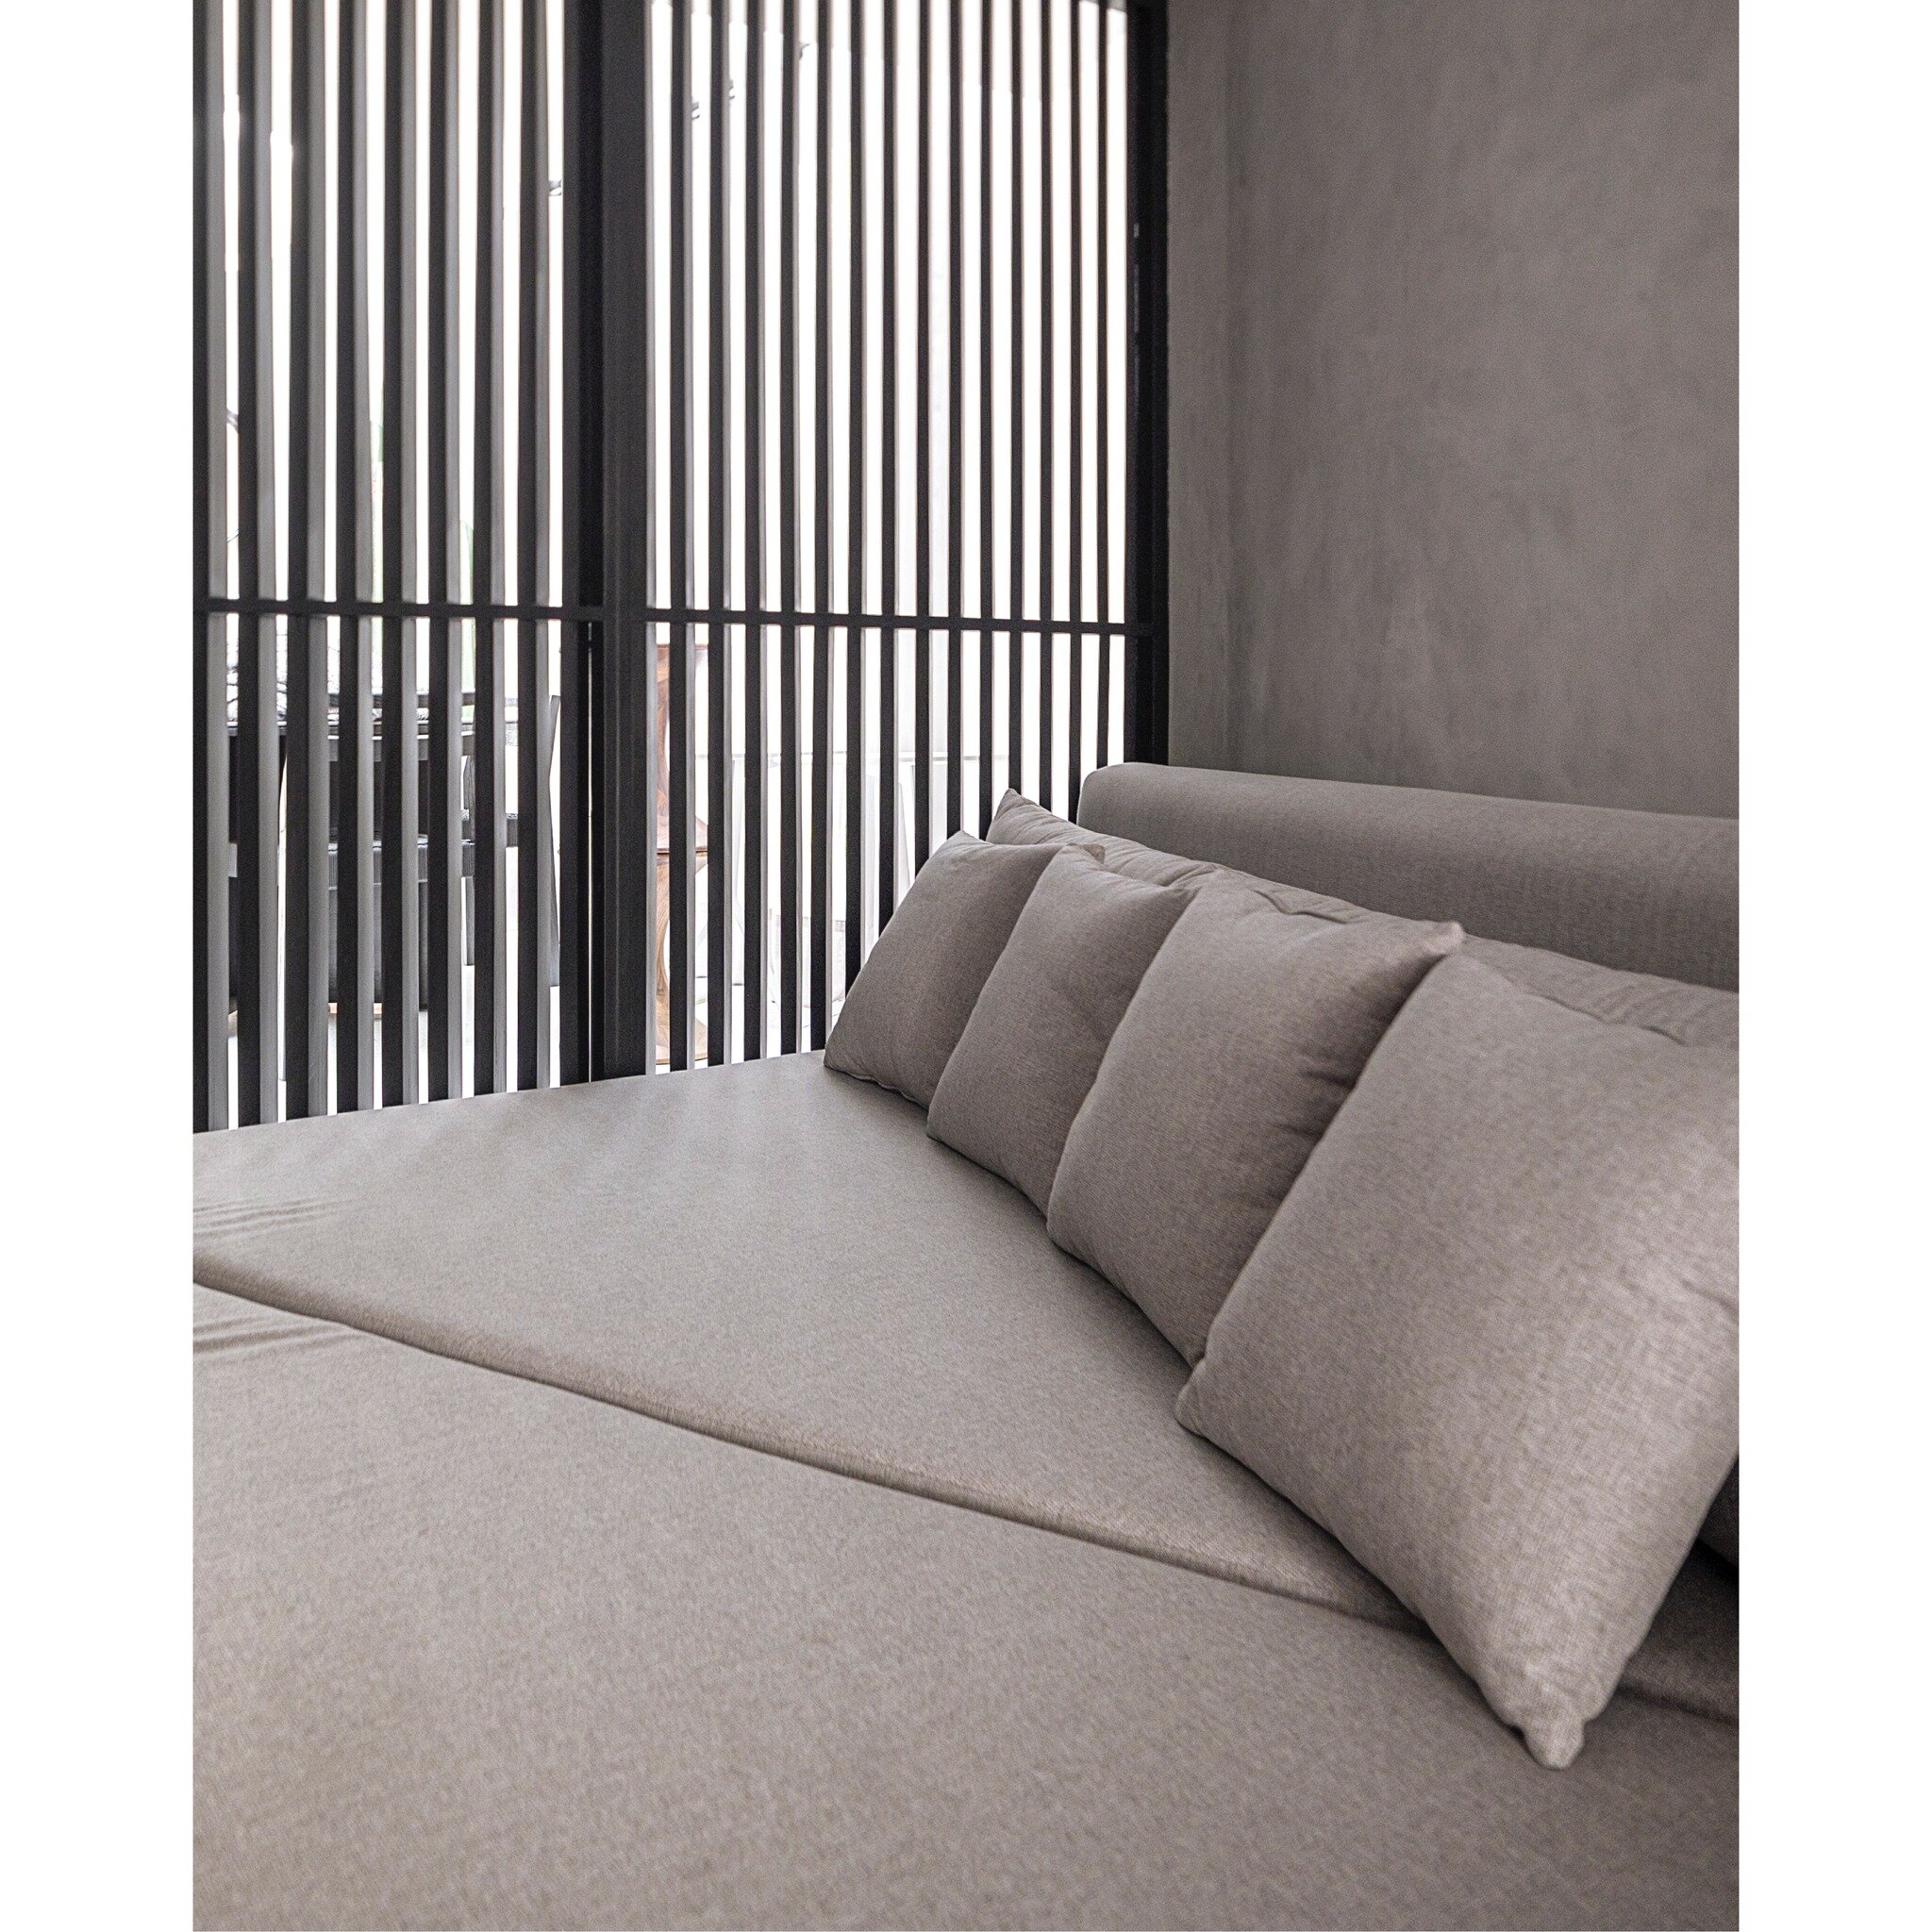 Las persianas negras no solo controlan la luz, sino que tambi&eacute;n la transforman en un espect&aacute;culo de l&iacute;neas luminosas 
.
.
.
#architecture #interiordesign #design #interiors
#inspiration #homedesign